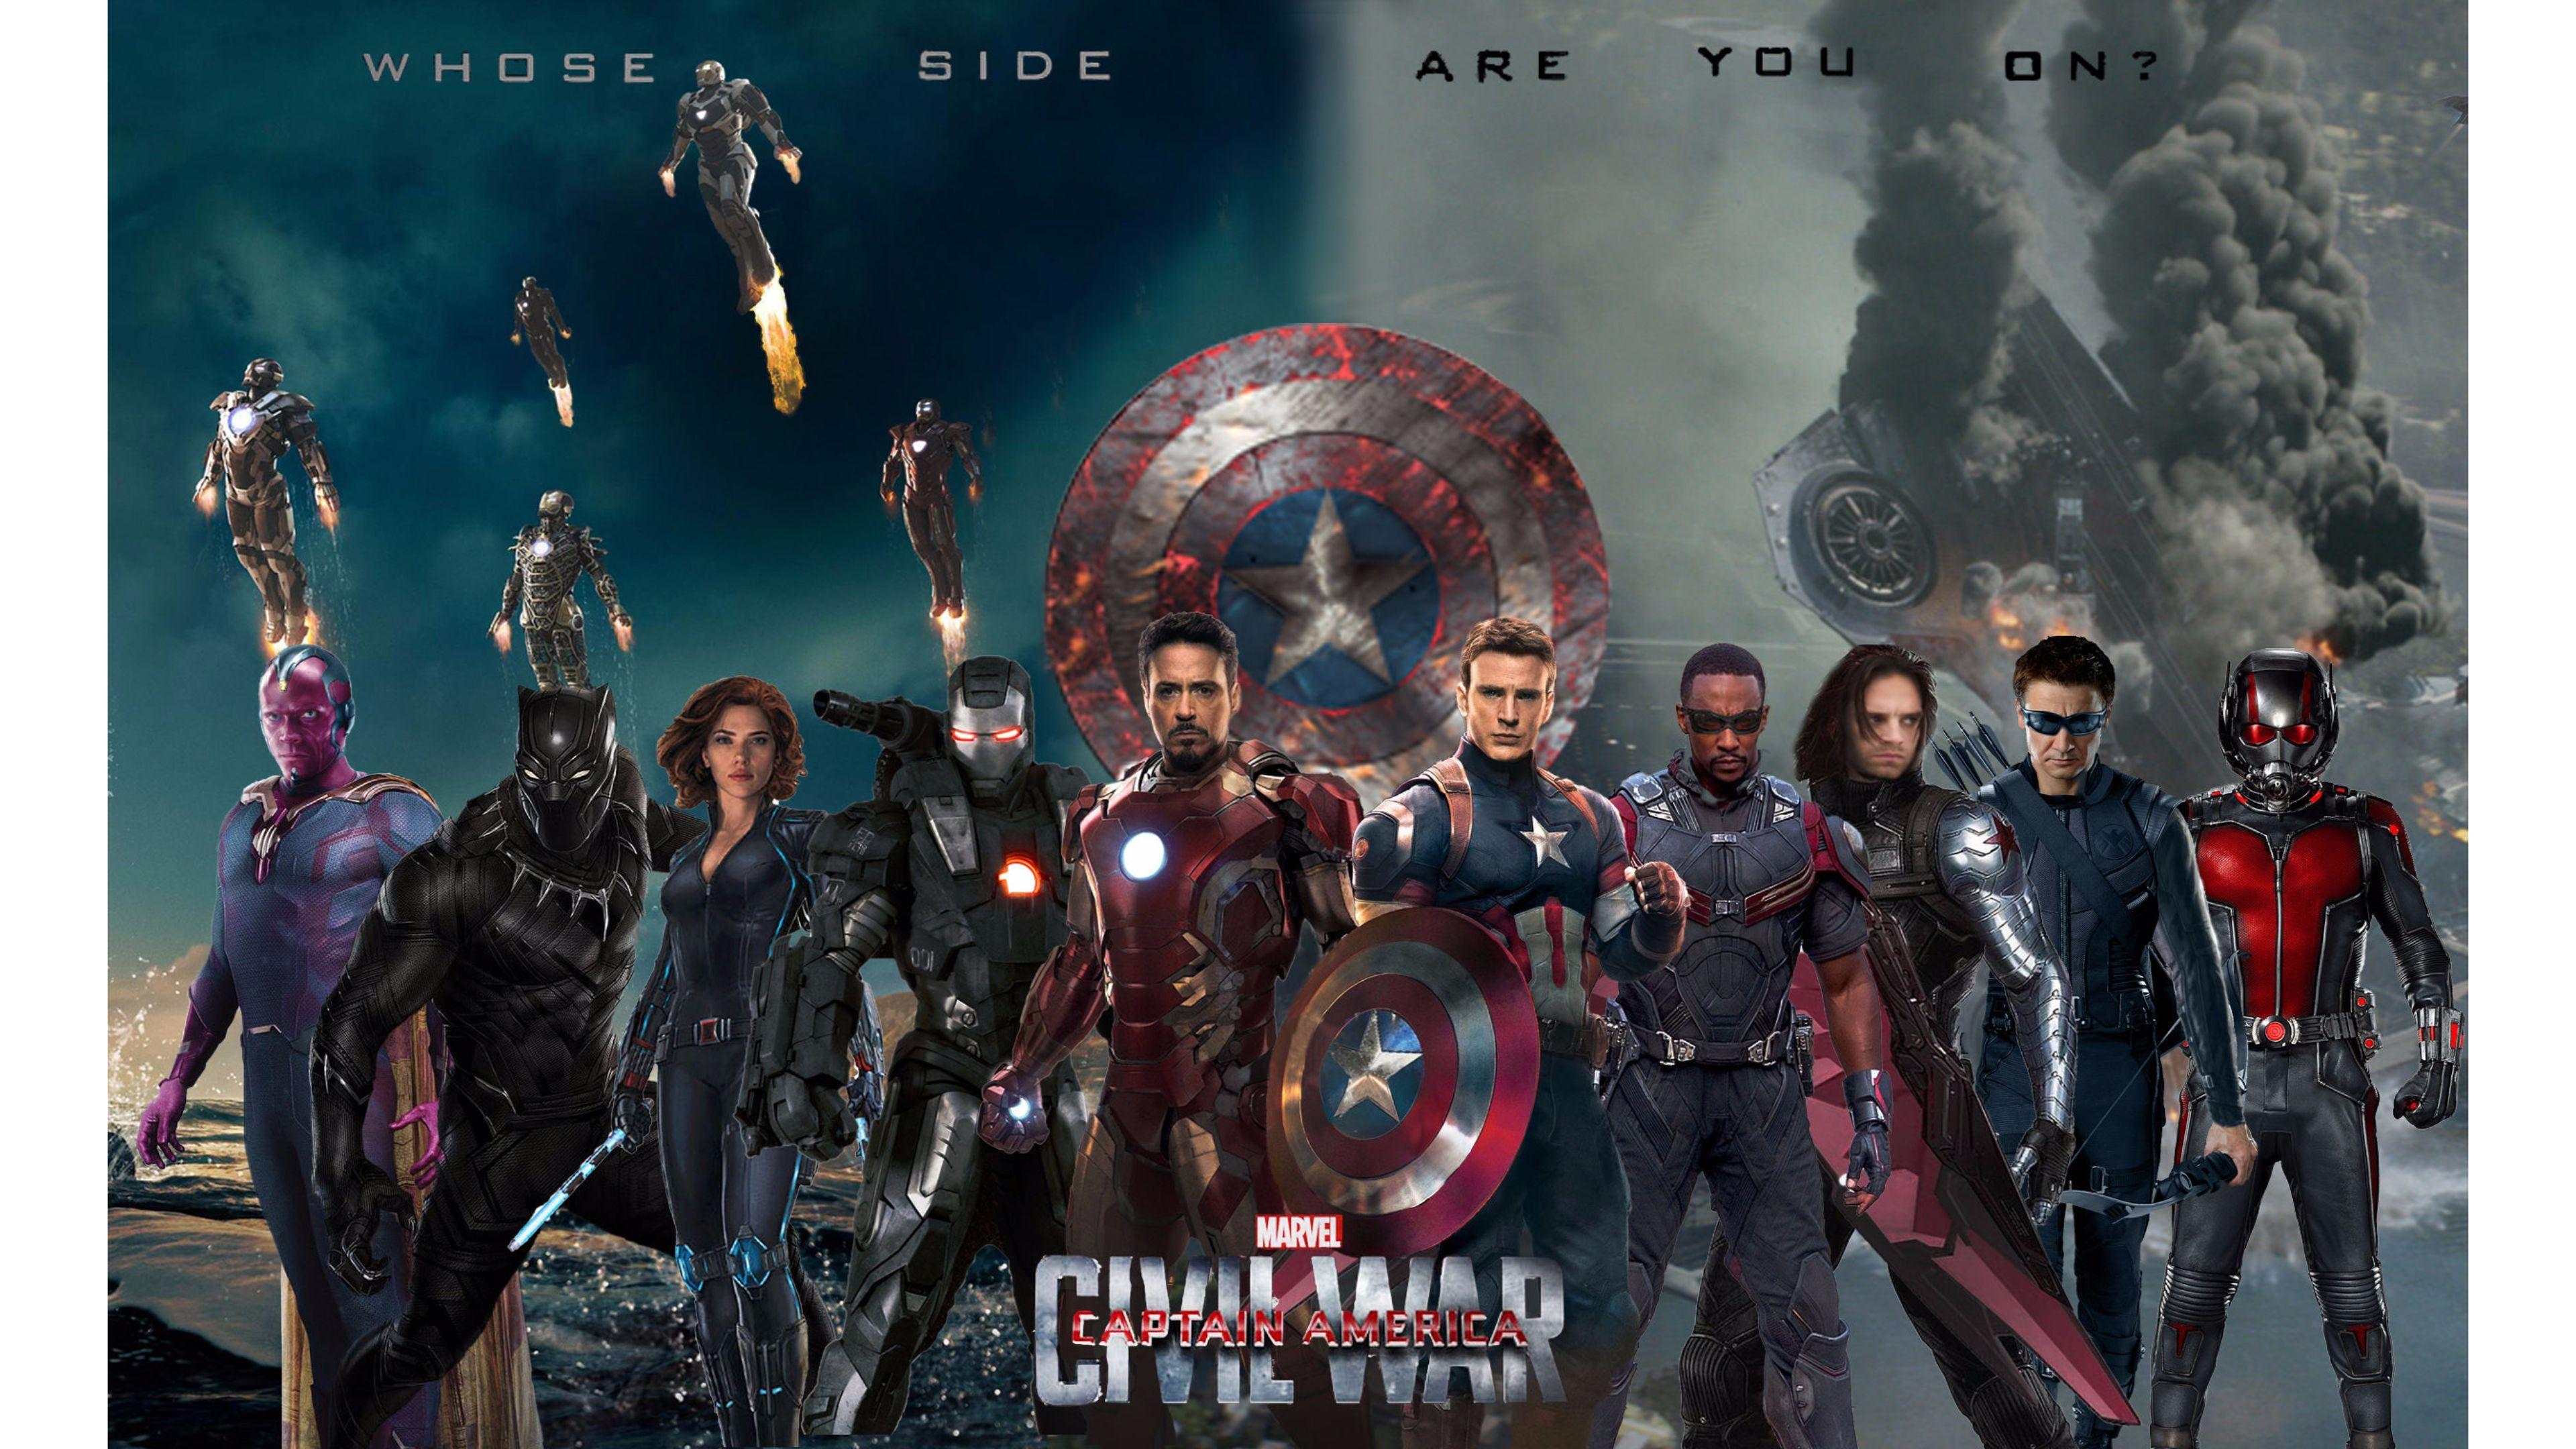 Captain America Civil War Wallpaper 1080p #captain #america